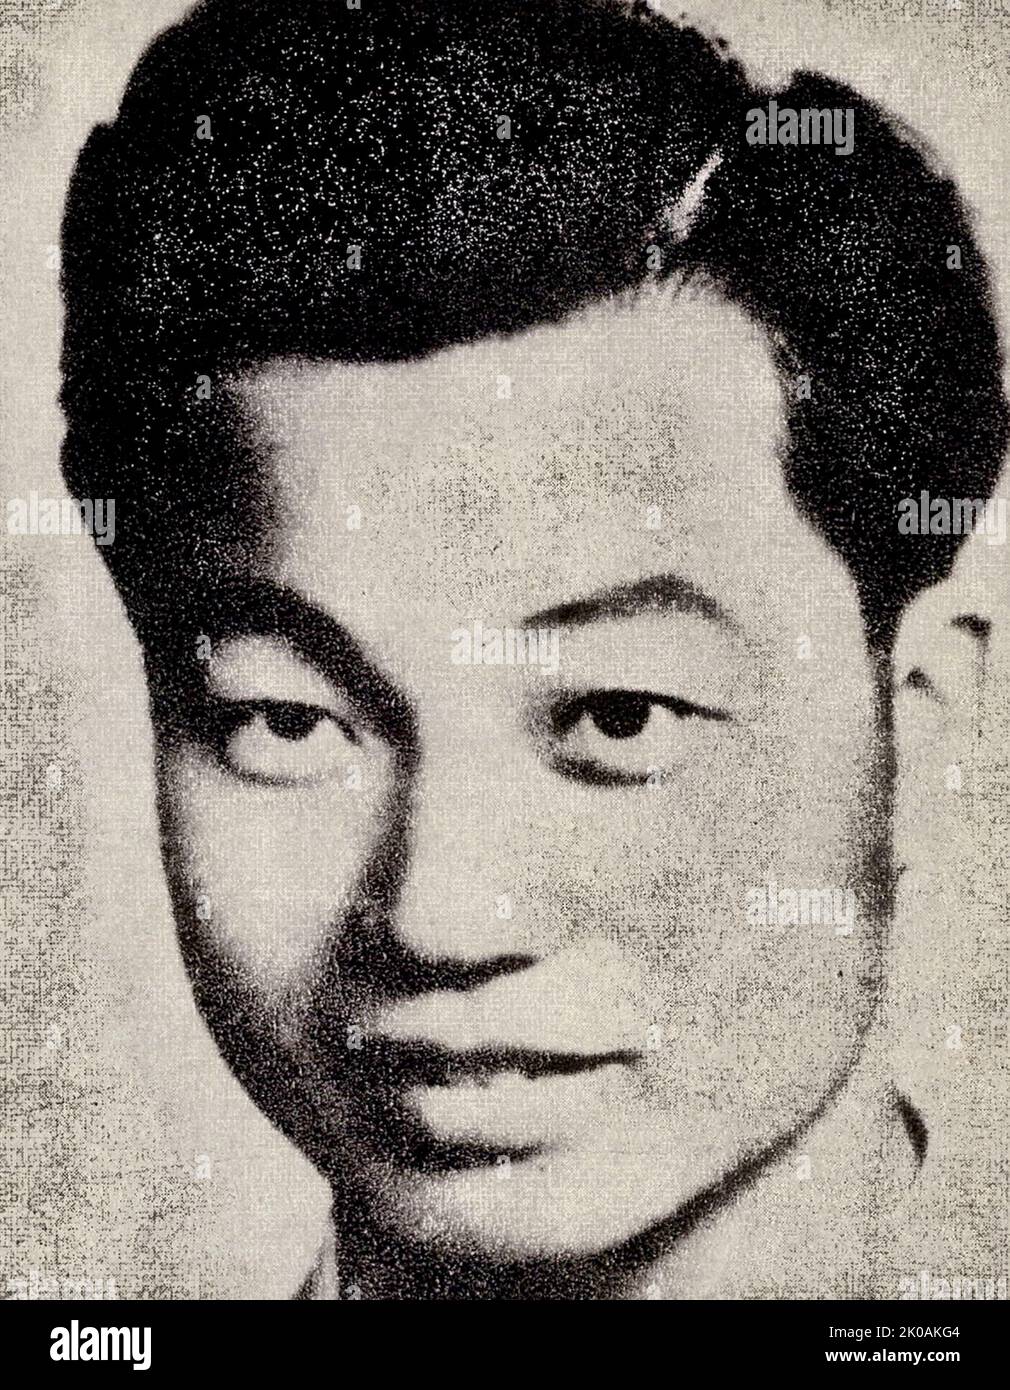 Qian Wenxiang (1924-1949), ein Mitglied der Kommunistischen Partei Chinas, aus dem Bezirk Sheng in der Provinz Zhejiang. Er war Polizei in der Polizeibehörde von Shanghai und engagierte sich aktiv in verdeckten Kämpfen. Er wurde am 13.. Mai 1949 verhaftet und wurde gefoltert, doch er schützte seine Partei und seine Kollegen. Er wurde zusammen mit seinen Kollegen Qian Fengqi, Liu Jiadong und Jiang Zhiyi getötet und als „vier Märtyrer der Polizei“ bezeichnet. Stockfoto